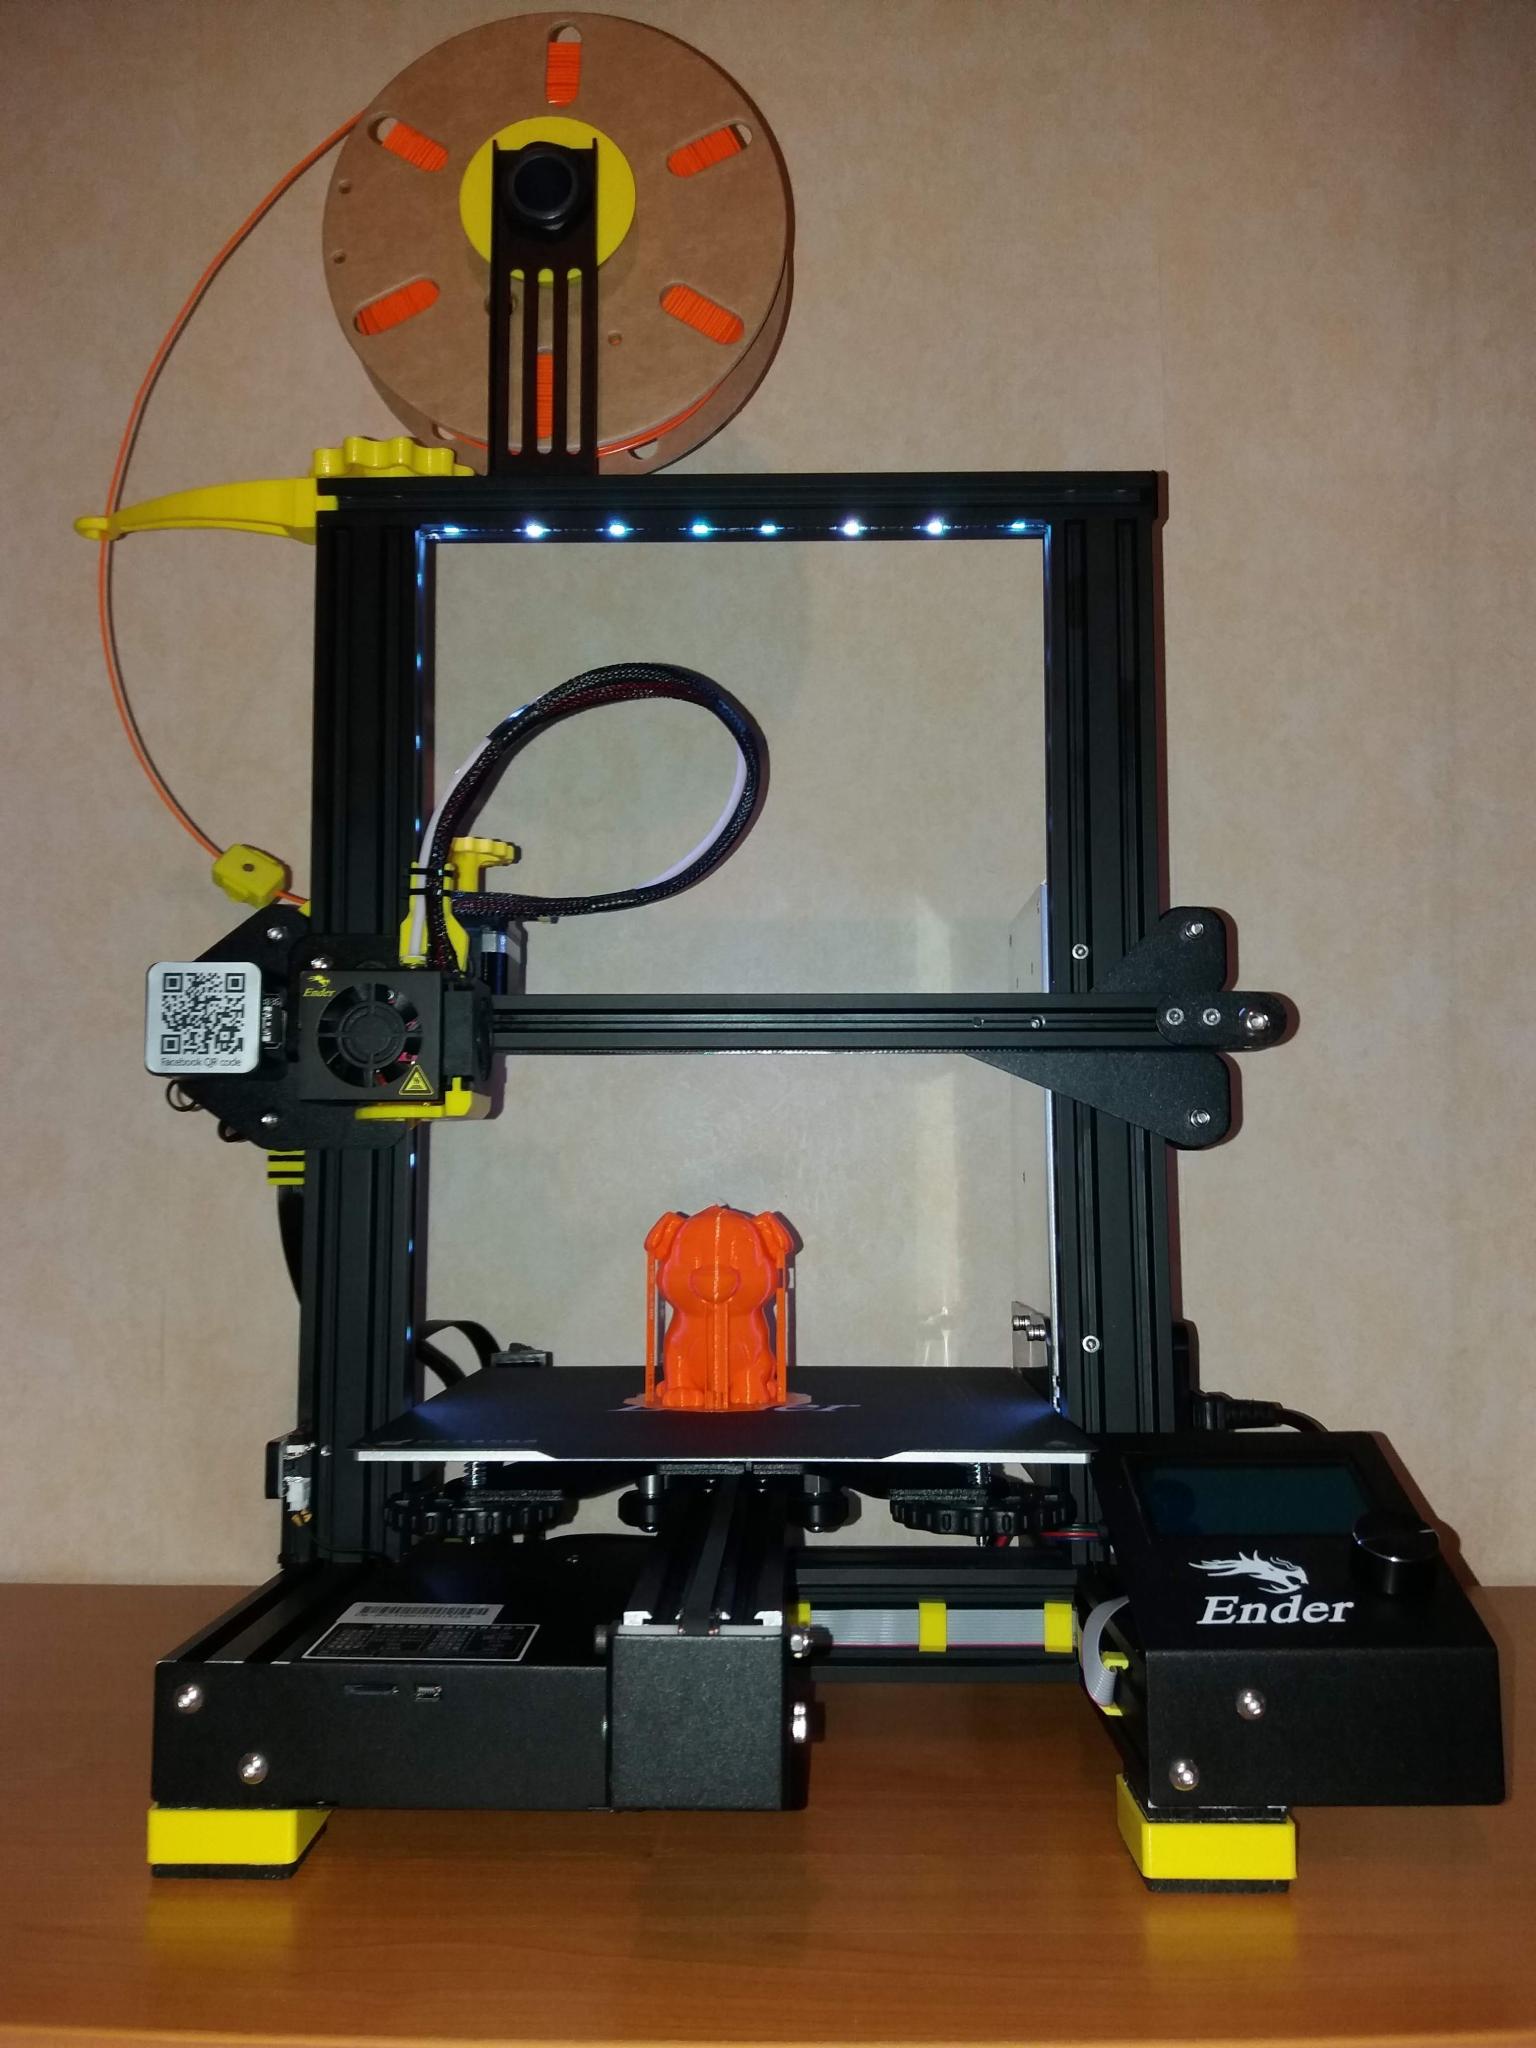 L'Ender3 pro à lolo - Creality - Forum pour les imprimantes 3D et